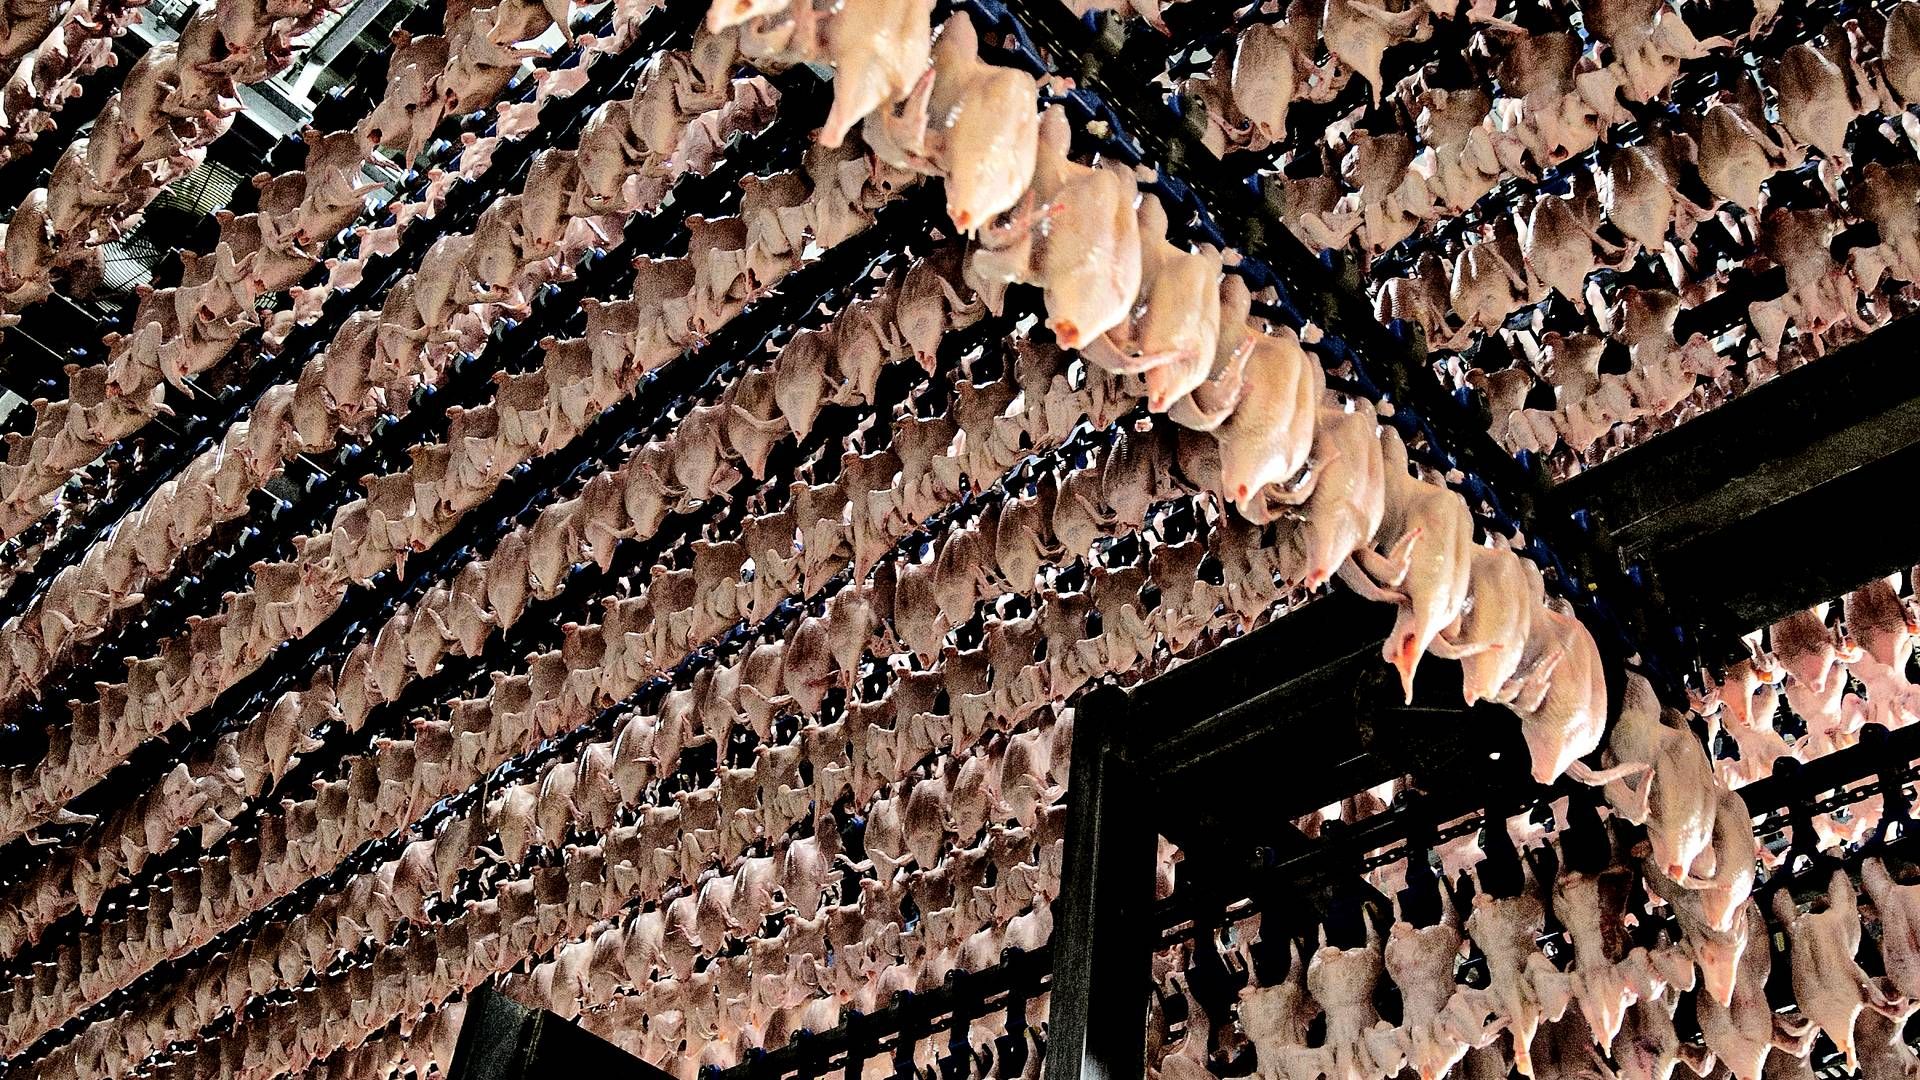 Fødevareministeren vil blandt andet indføre et statsligt stop for indkøb af hurtigtvoksende kyllinger. | Foto: Joachim Adrian/Politiken/Ritzau Scanpix